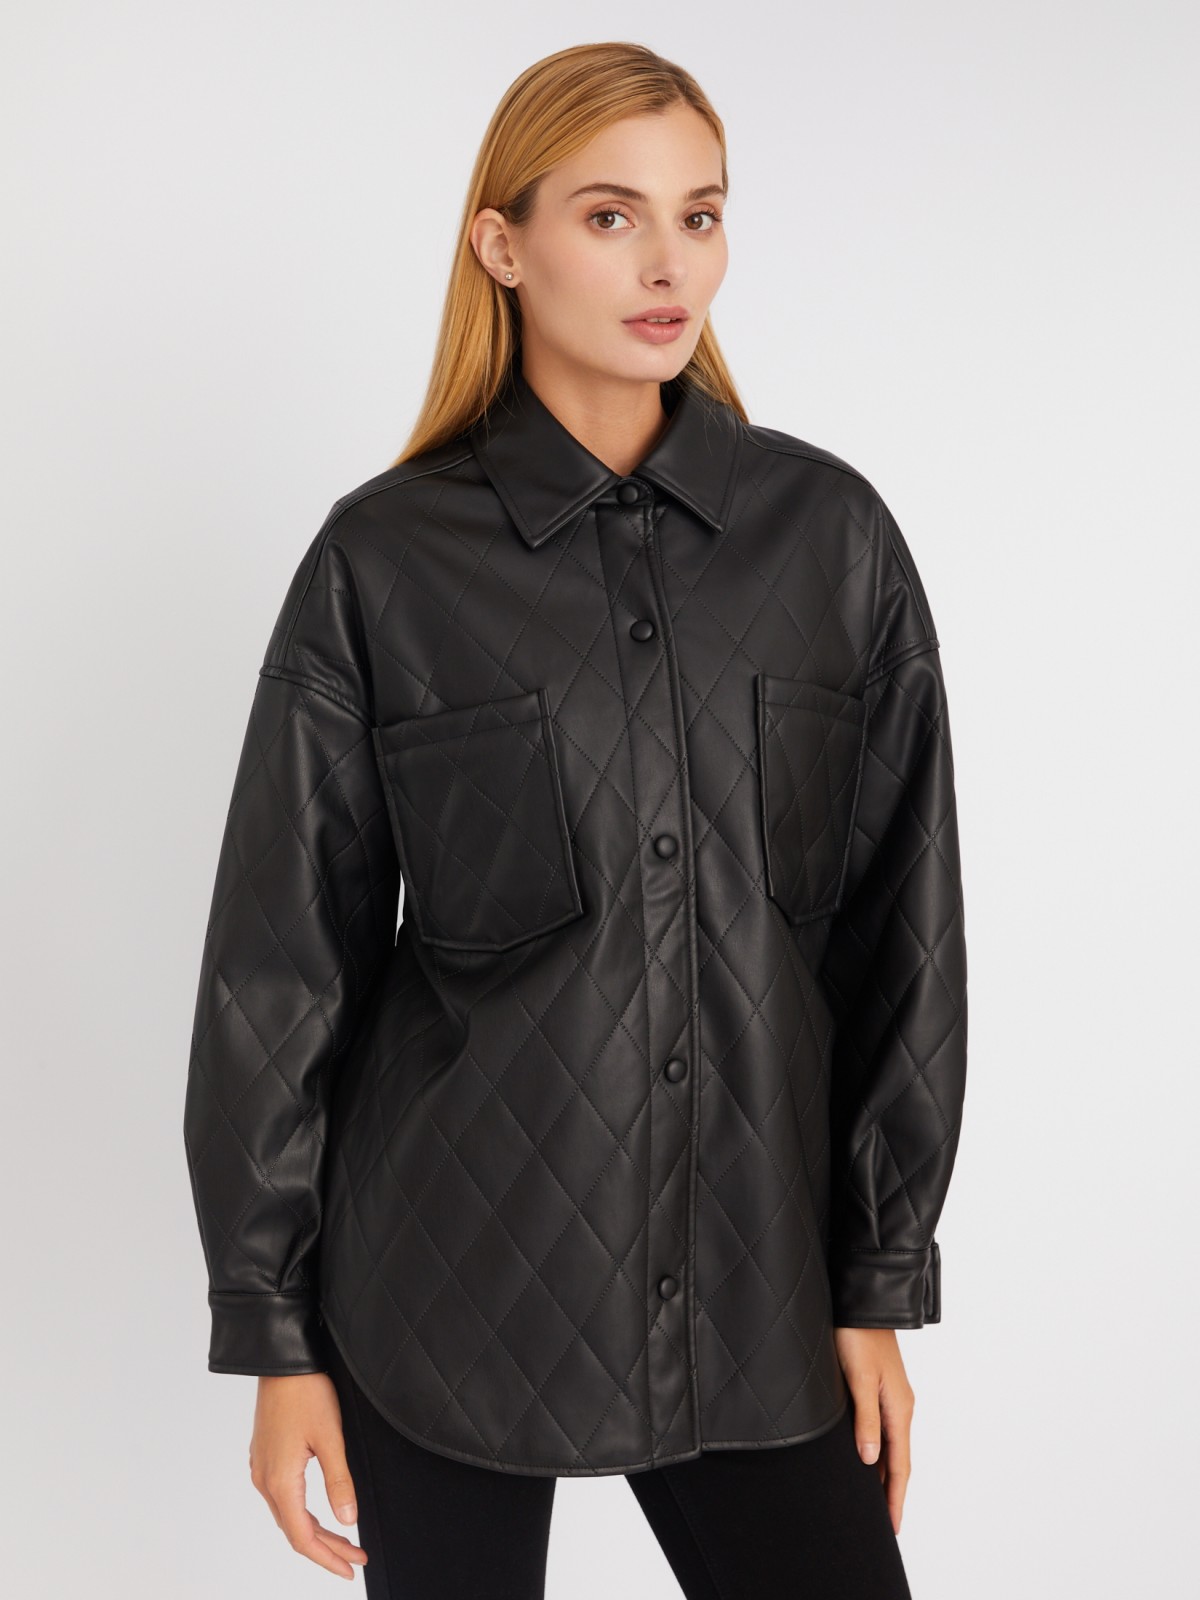 Стёганая куртка-рубашка из экокожи на синтепоне zolla 023335102044, цвет черный, размер XS - фото 4